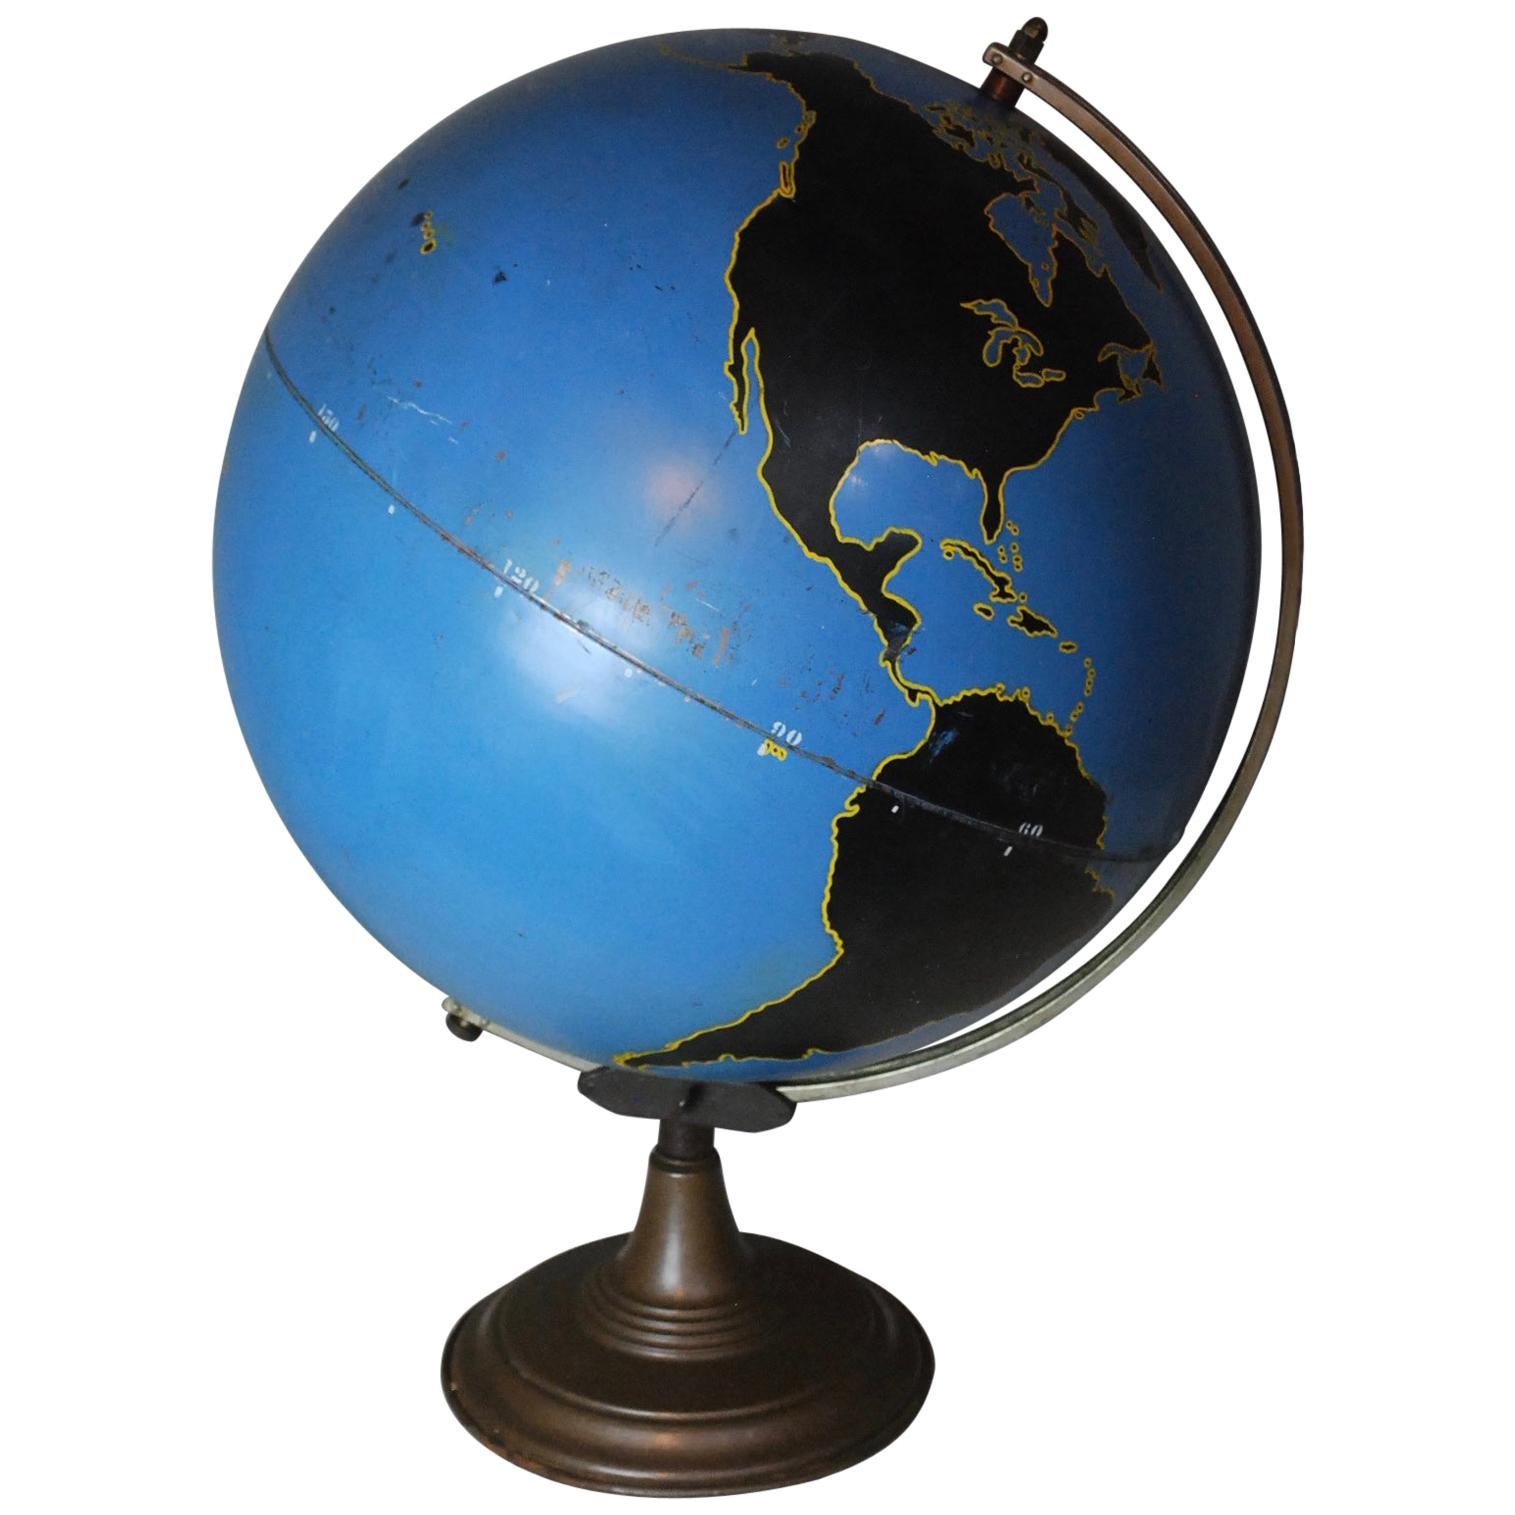 1930 Denoyer Geppert Military World Globe